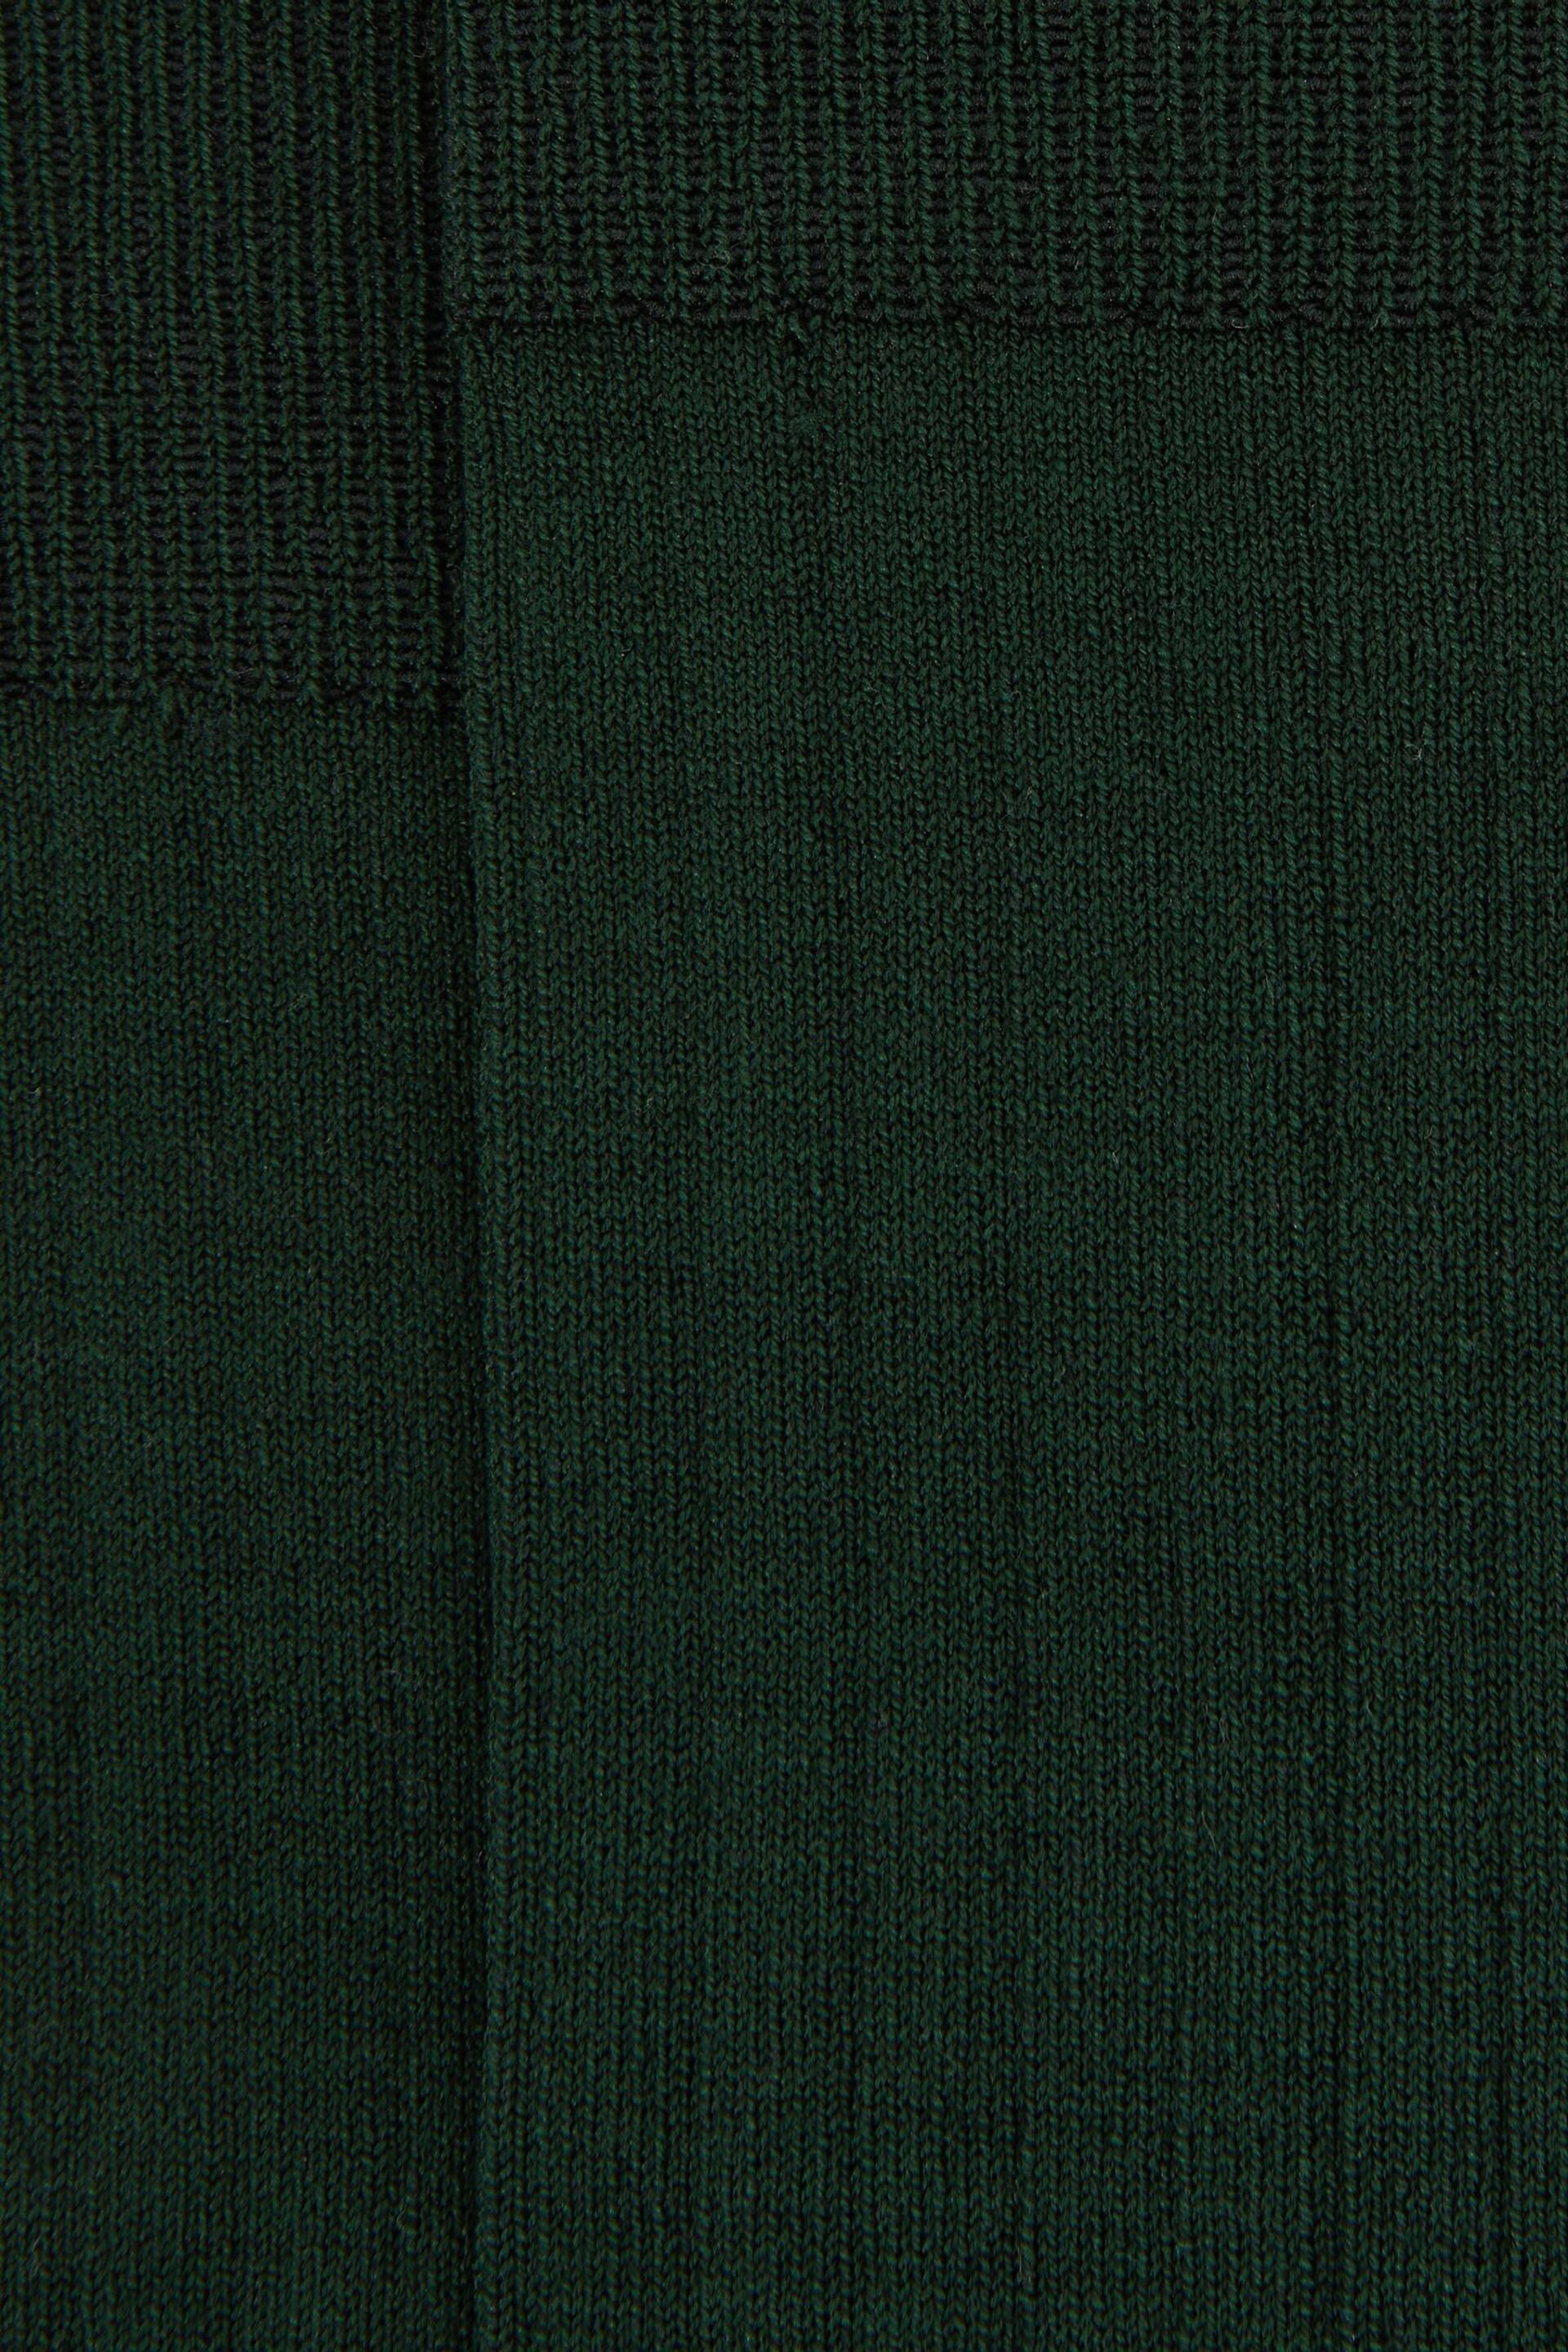 Reiss Bottle Green Fela Ribbed Socks - Image 3 of 3